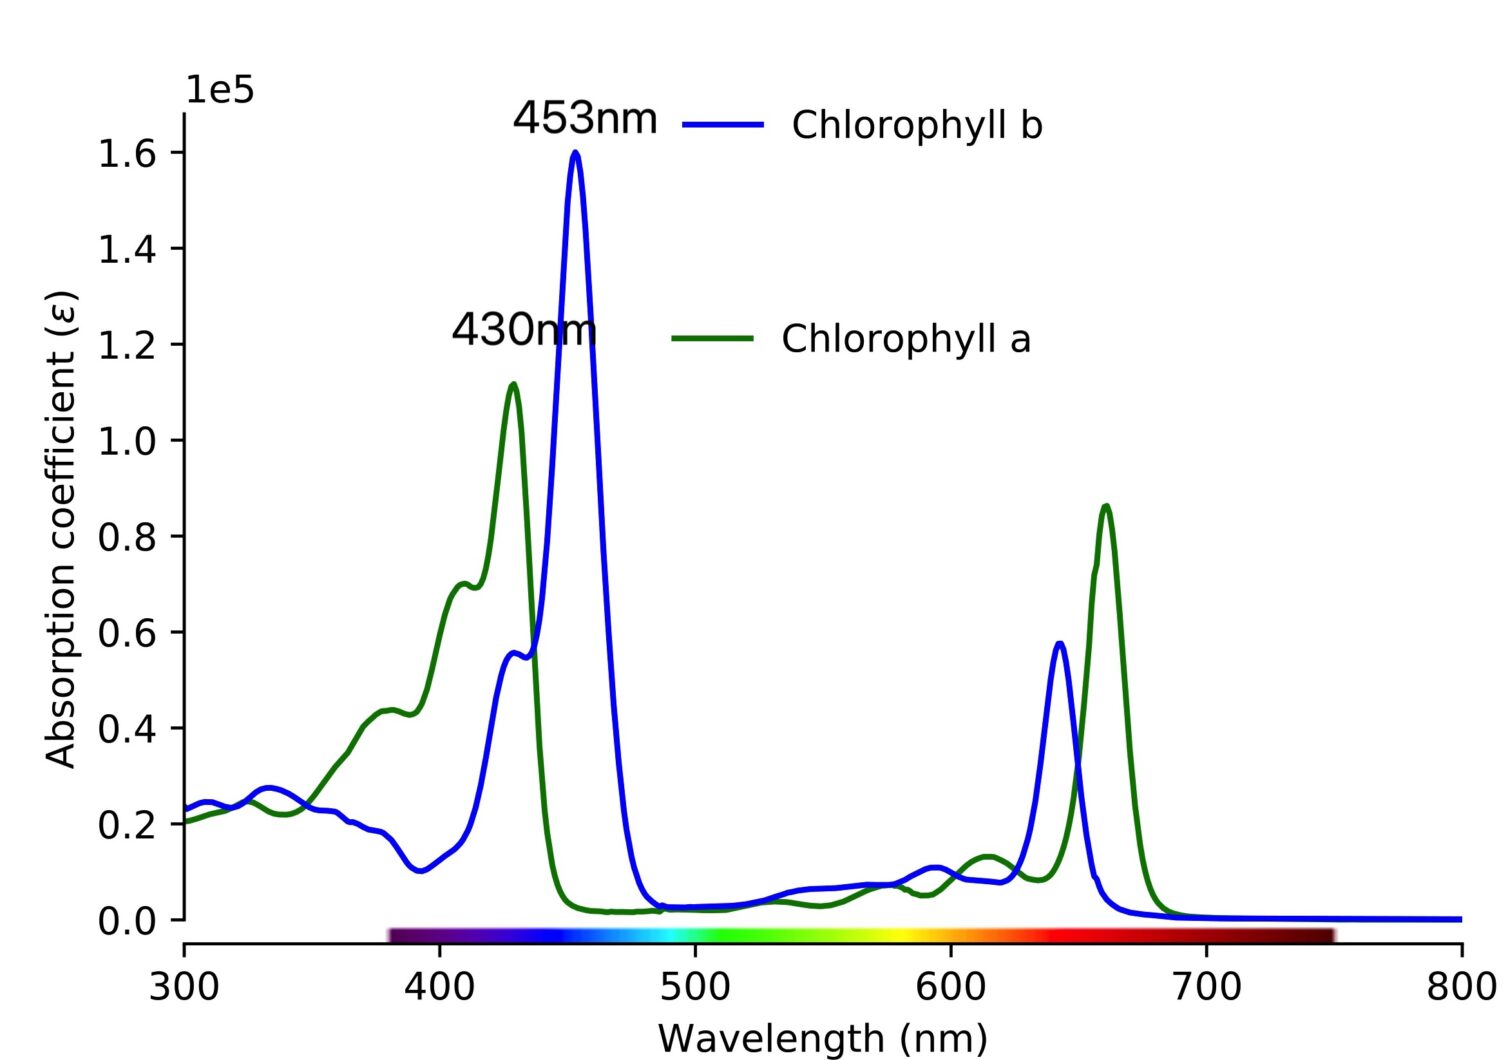 Η χλωροφύλλη α έχει κατά προσέγγιση μέγιστη απορρόφηση 430 nm